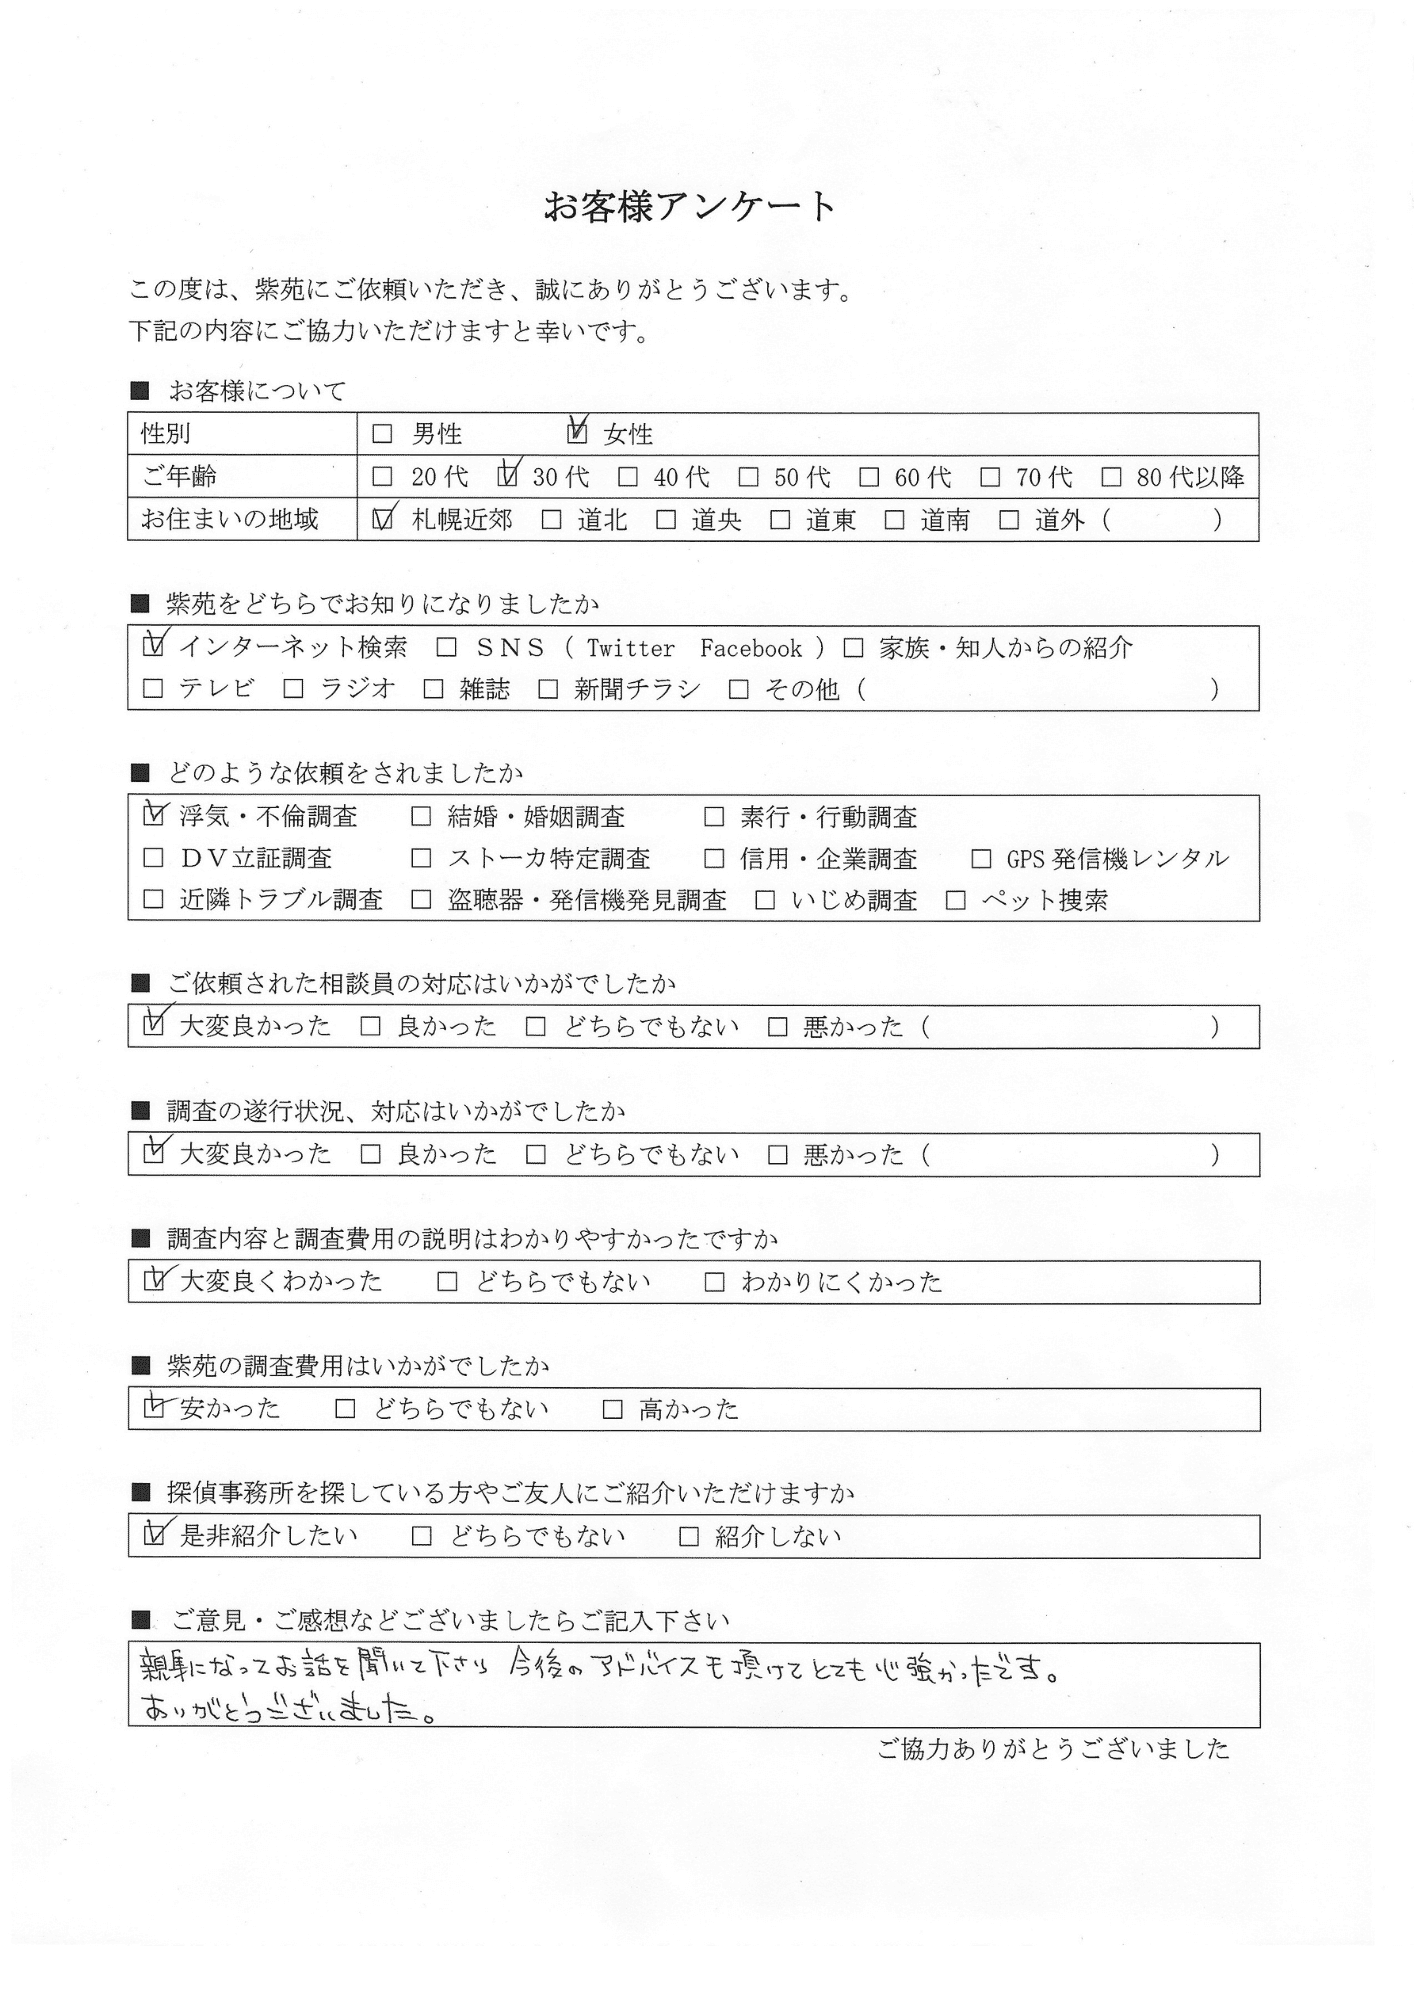 札幌市30代女性-浮気調査アンケート